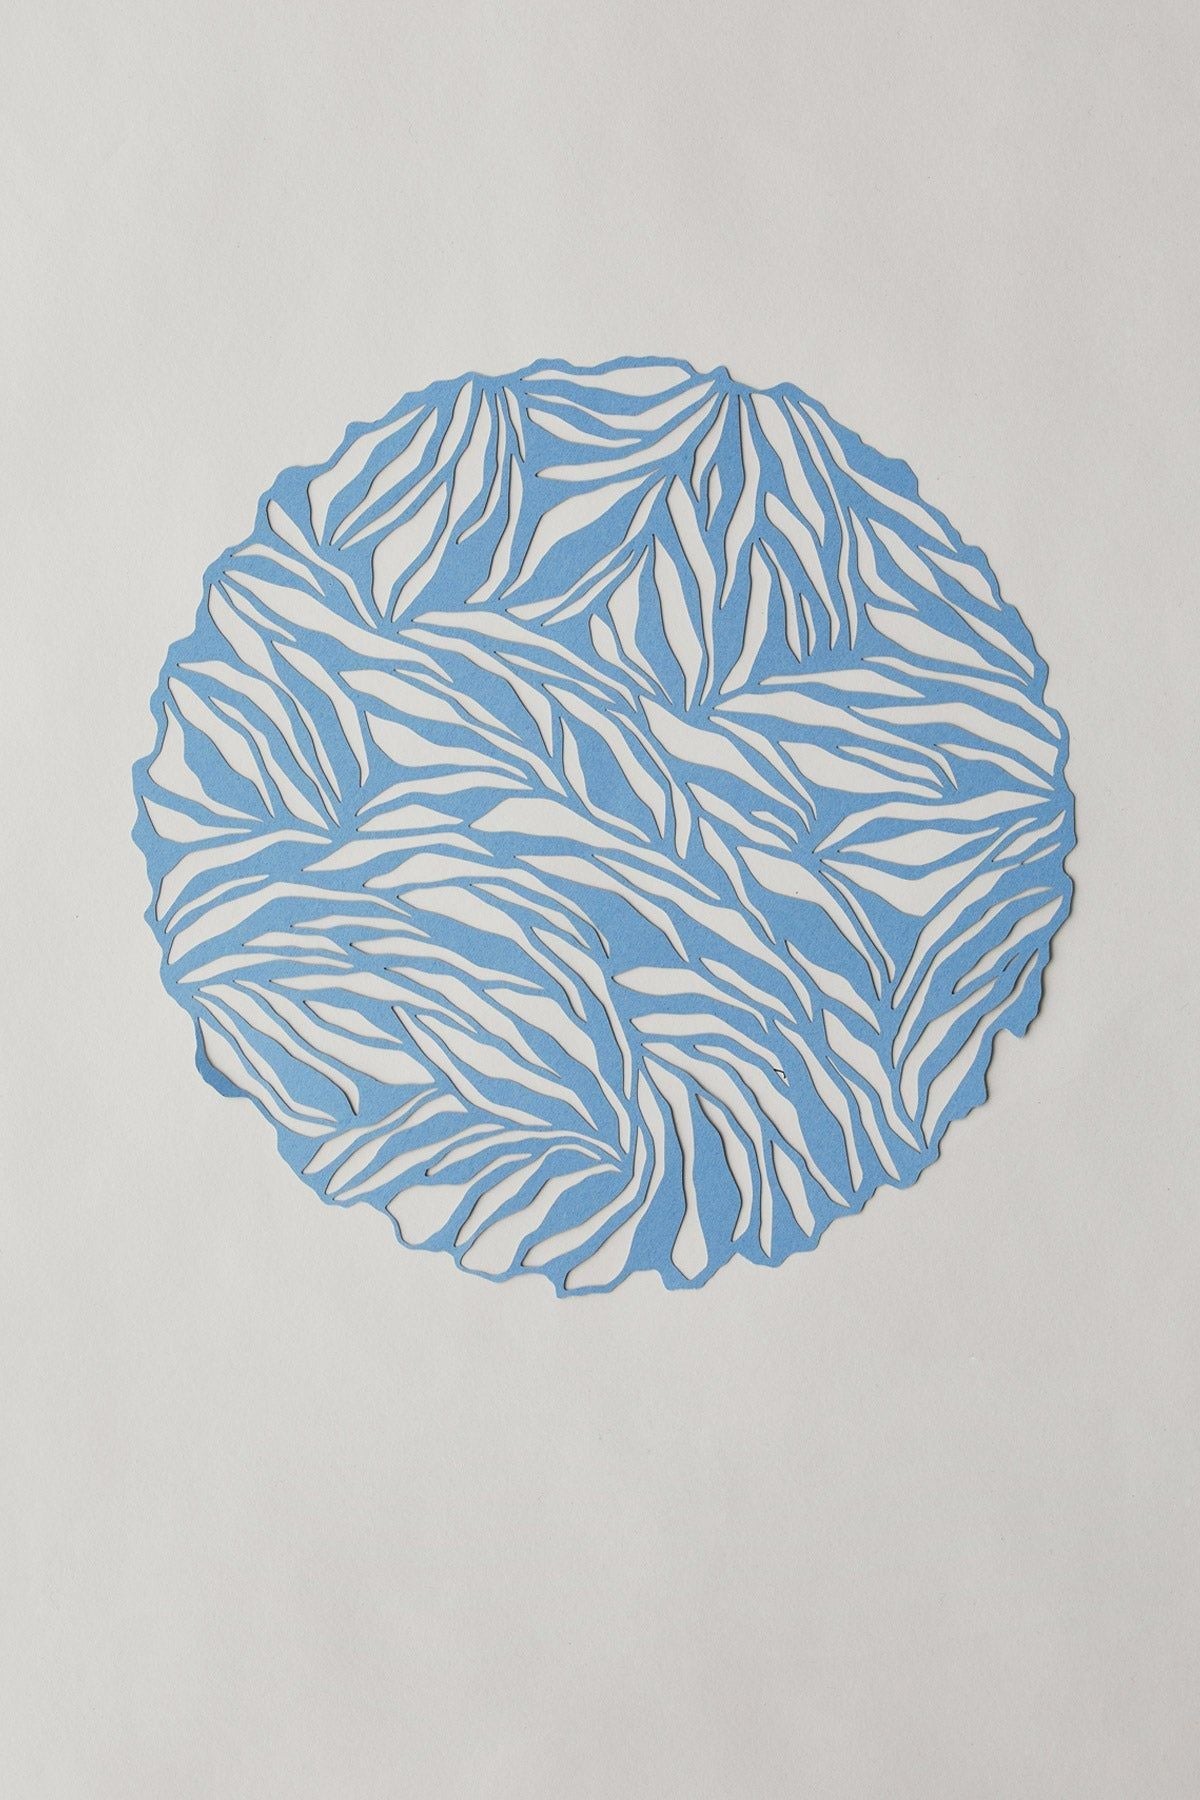 Estudio sobre Papercut A4 Círculo orgánico, azul de hielo